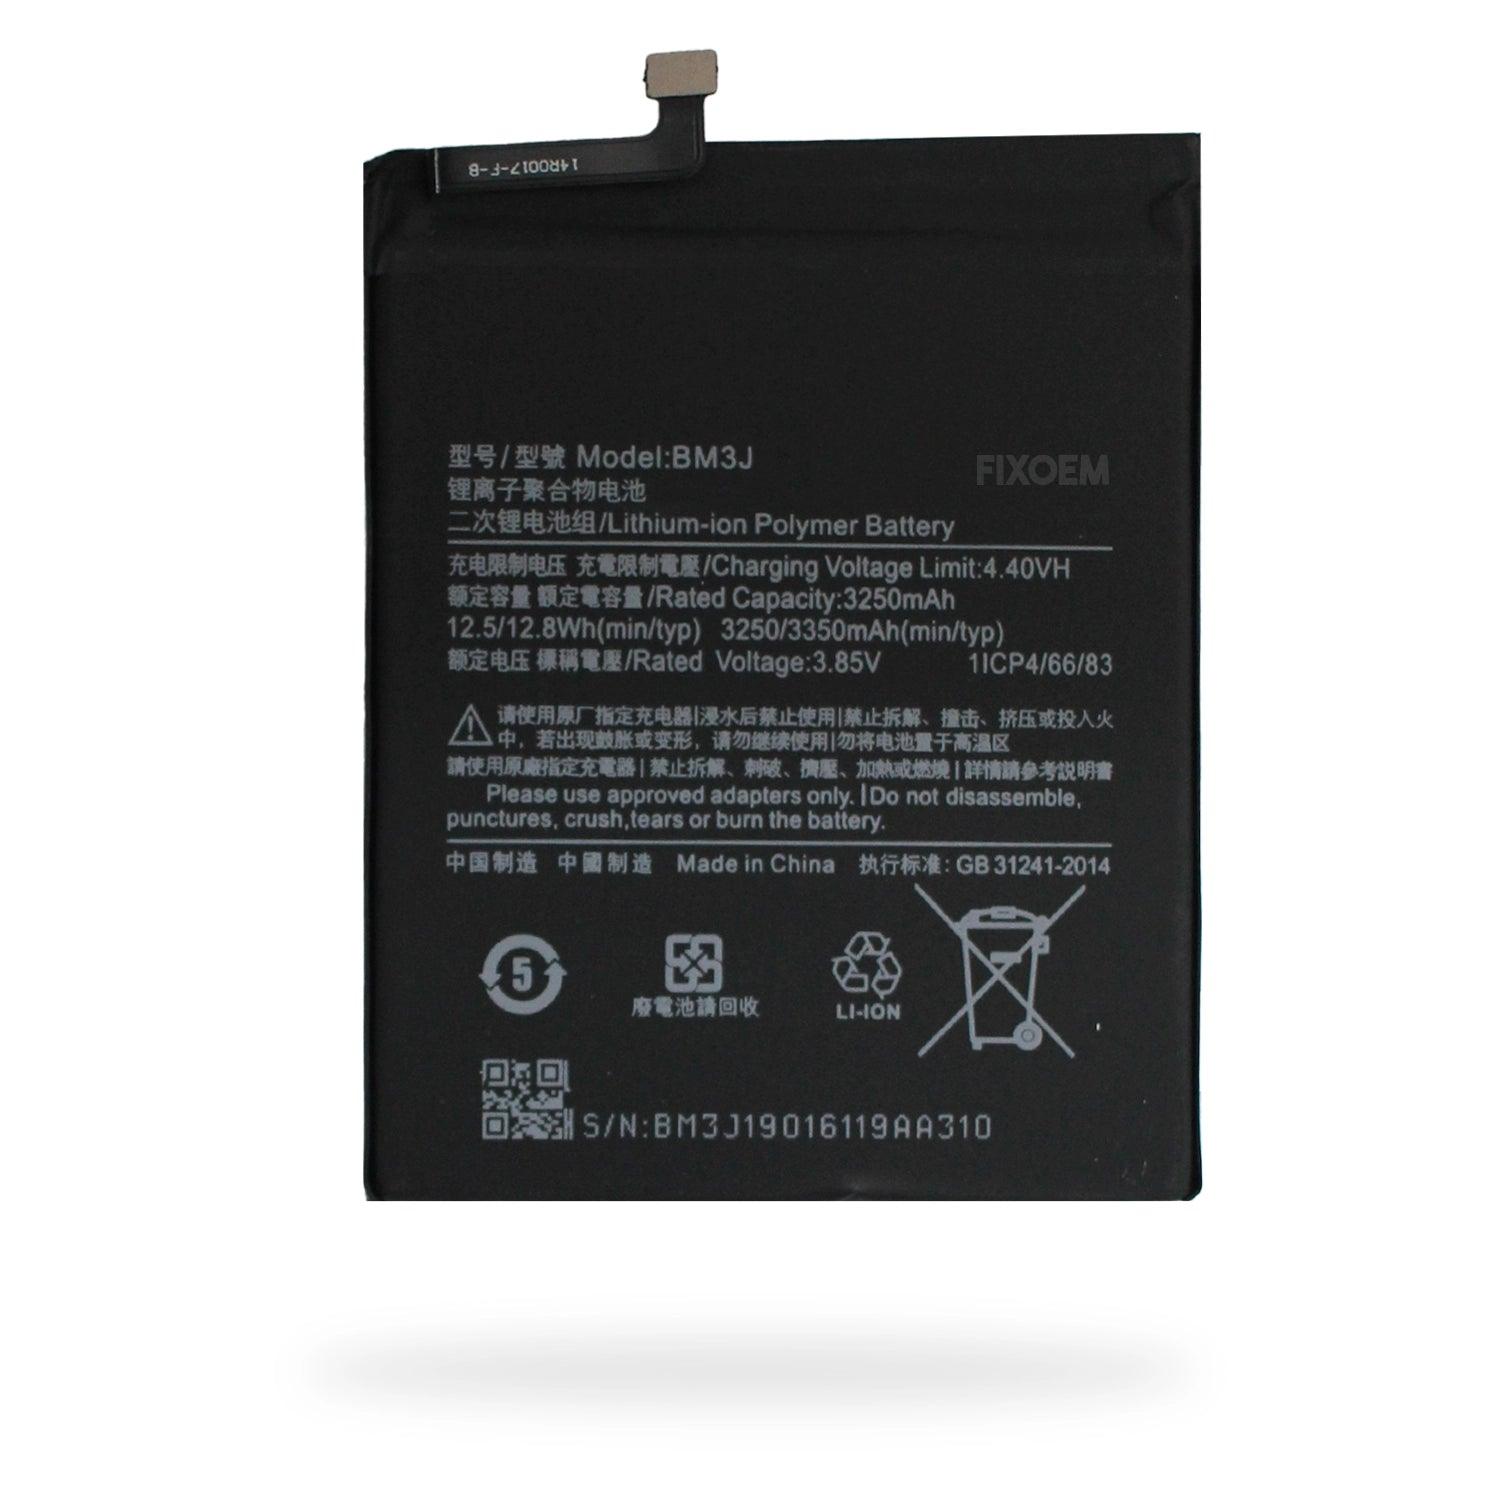 Bateria Xiaomi Mi 8 Lite M1808d2te Bm3J a solo $ 150.00 Refaccion y puestos celulares, refurbish y microelectronica.- FixOEM